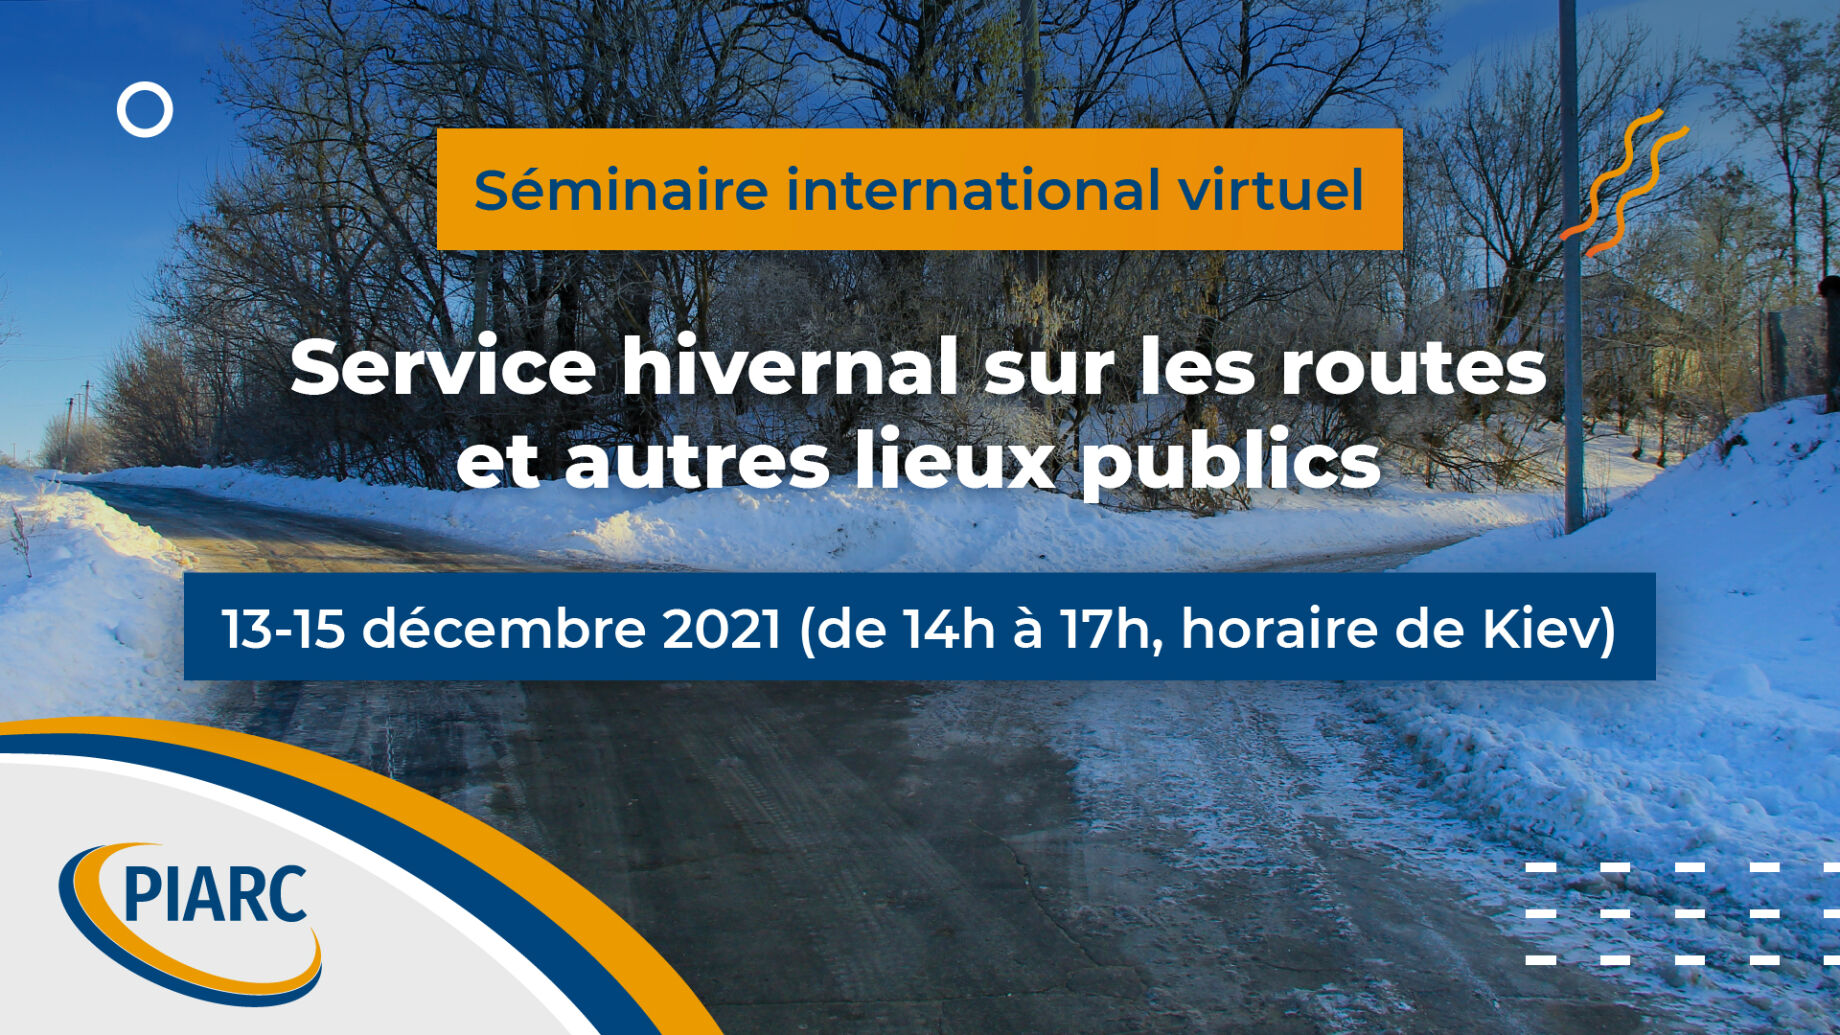 Inscrivez-vous maintenant ! Pour en savoir plus sur la gestion et l'amélioration de la viabilité hivernale sur les routes, participez au Séminaire international de PIARC "Service hivernal sur les routes et autres lieux publics"